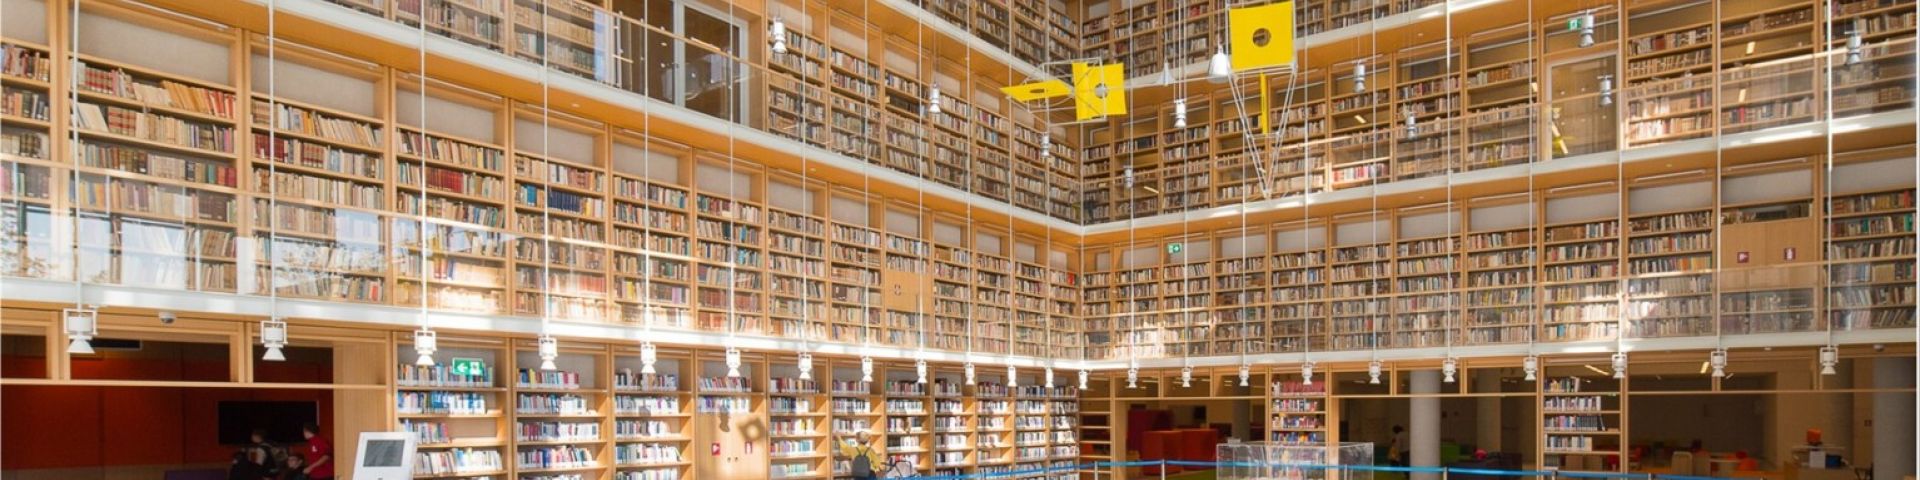 Συγκέντρωση βιβλίων από το Υπουργείο Παιδείας, Θρησκευμάτων και Αθλητισμού και την Εθνική Βιβλιοθήκη της Ελλάδος για το βιβλιοπωλείο των αστέγων - Εικόνα